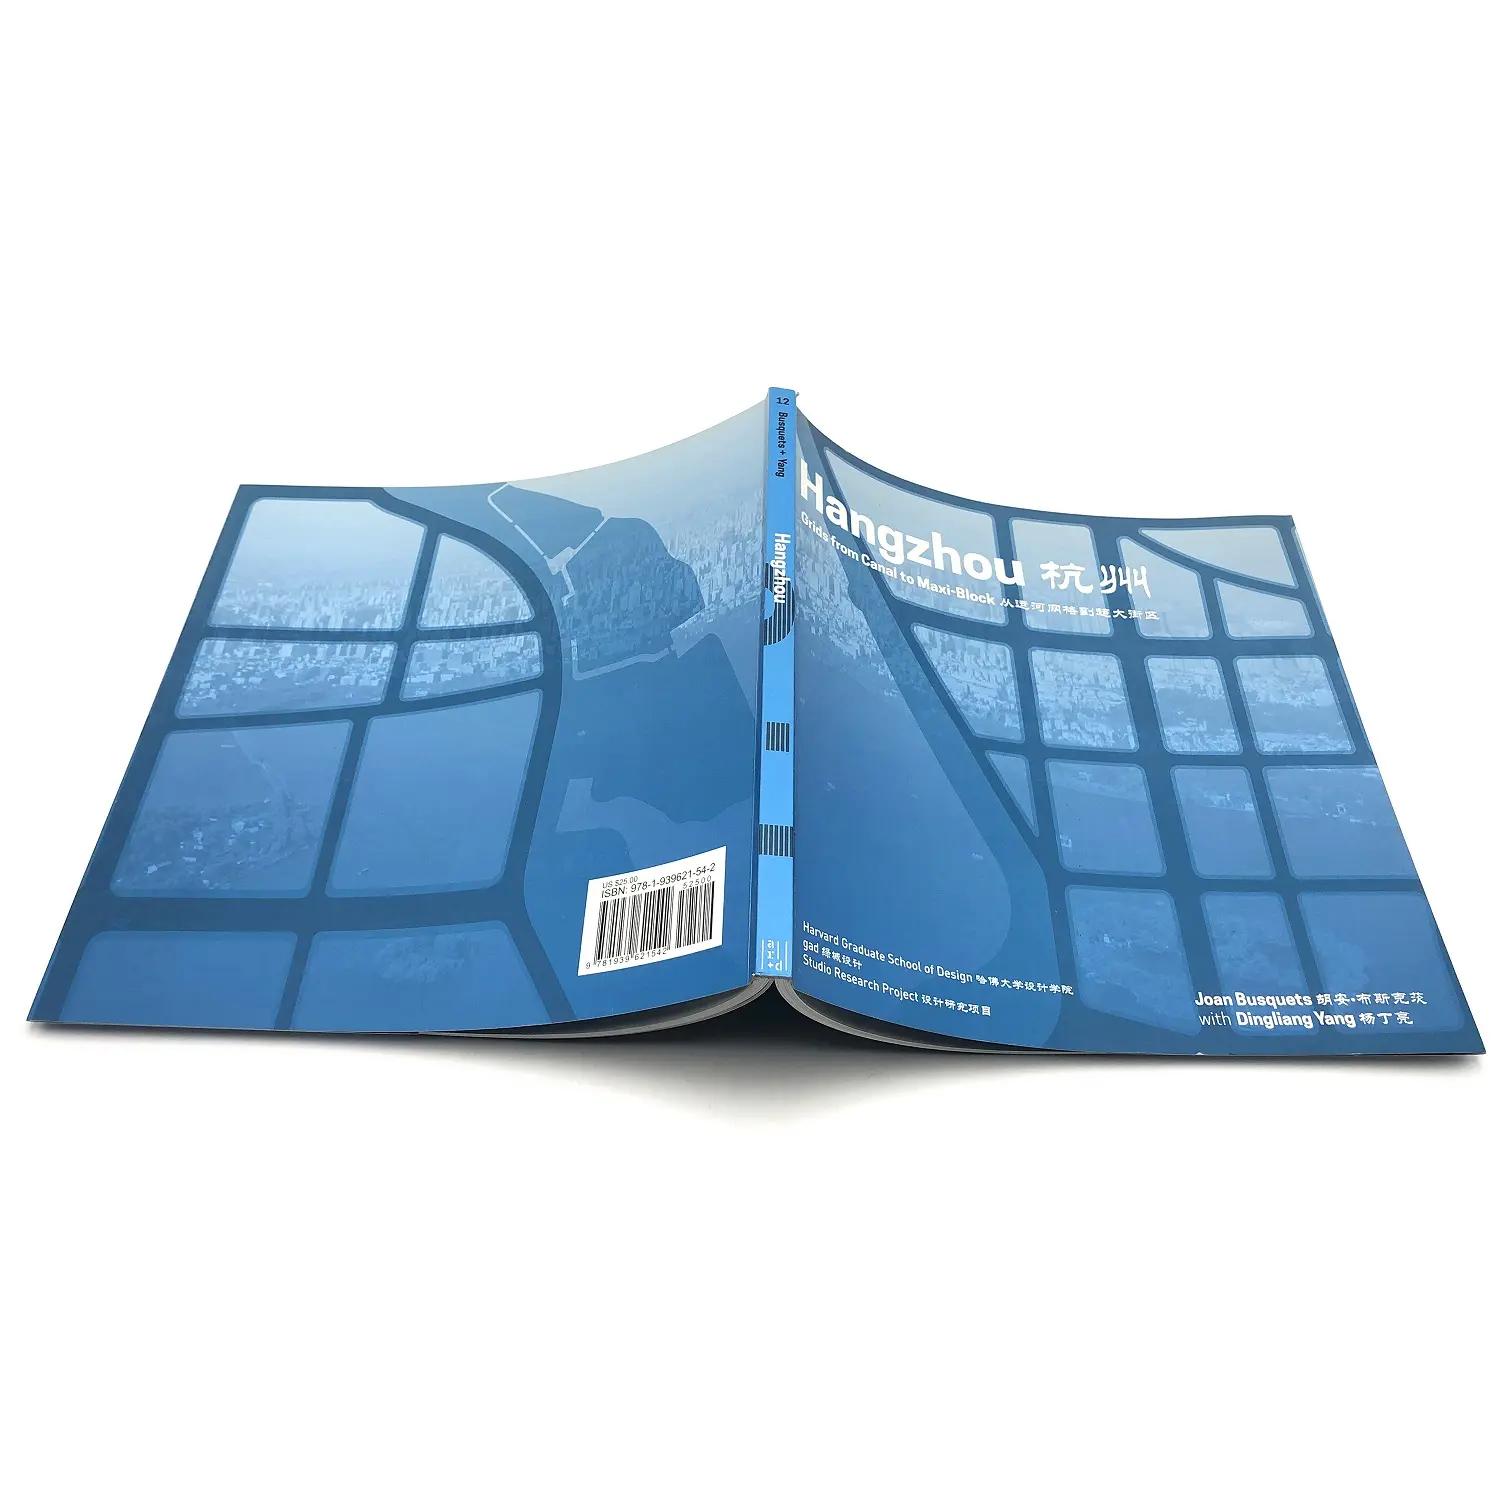 Barato preço personalizado impressão a granel a4 papel voador catálogo brochura booklet instrução manual impressão